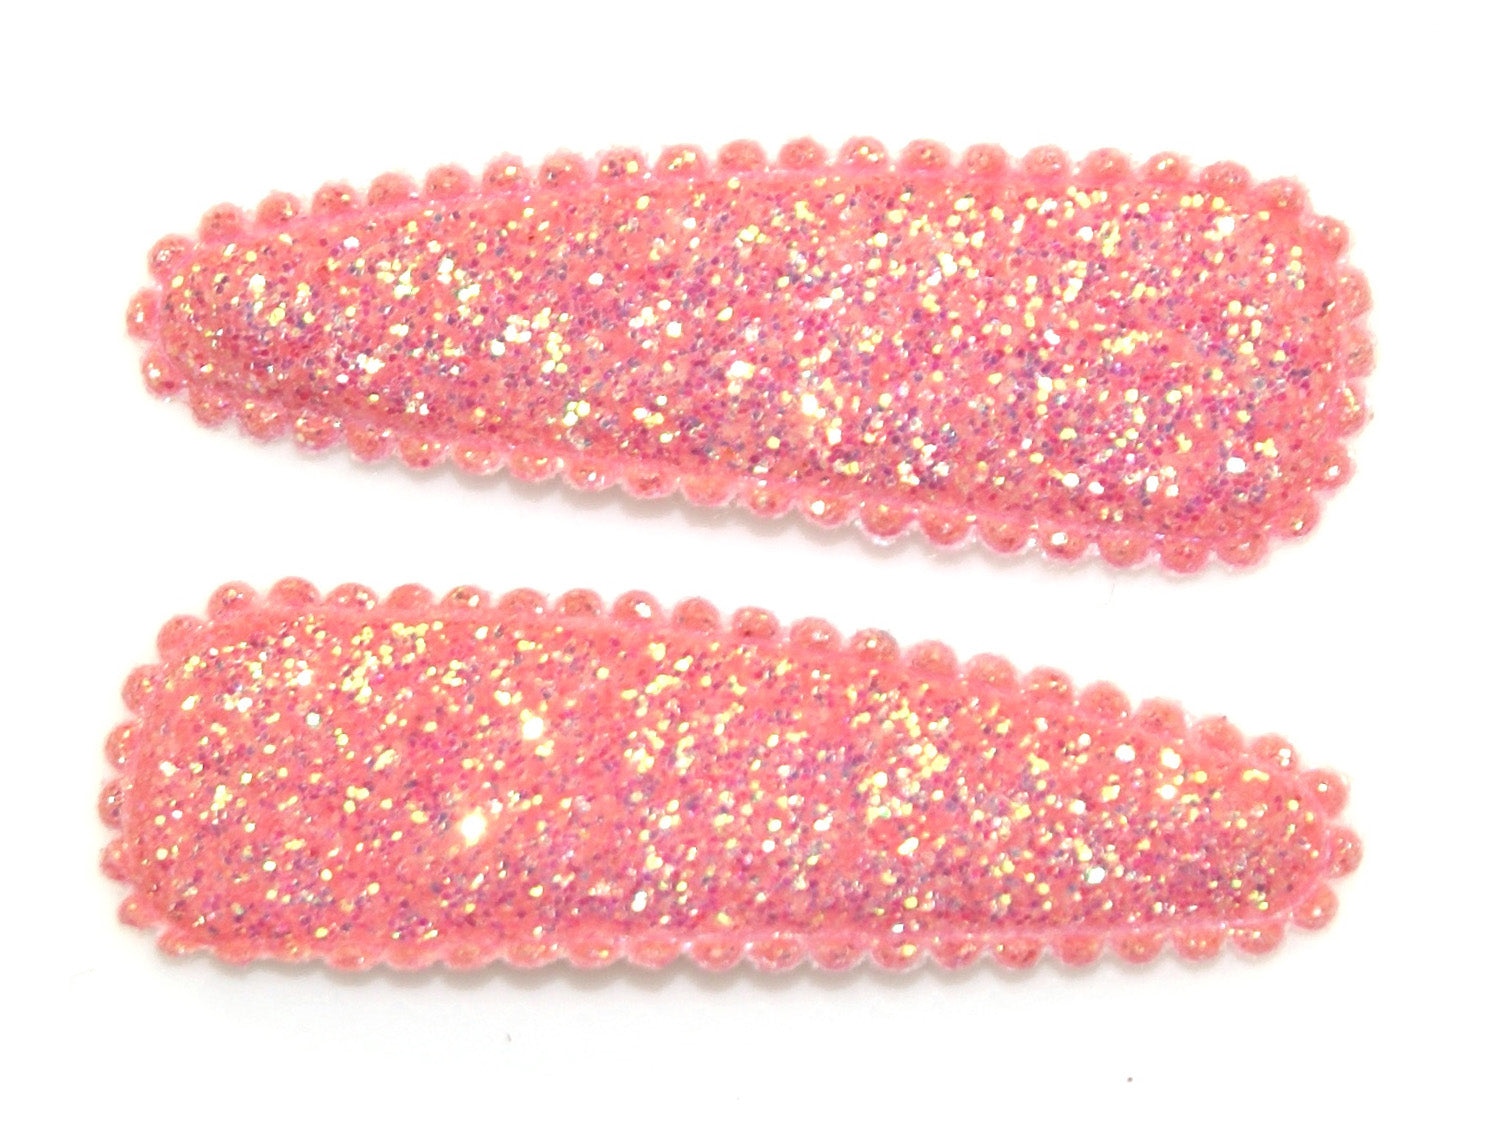 Glitter Medium Snaps - Light Pink